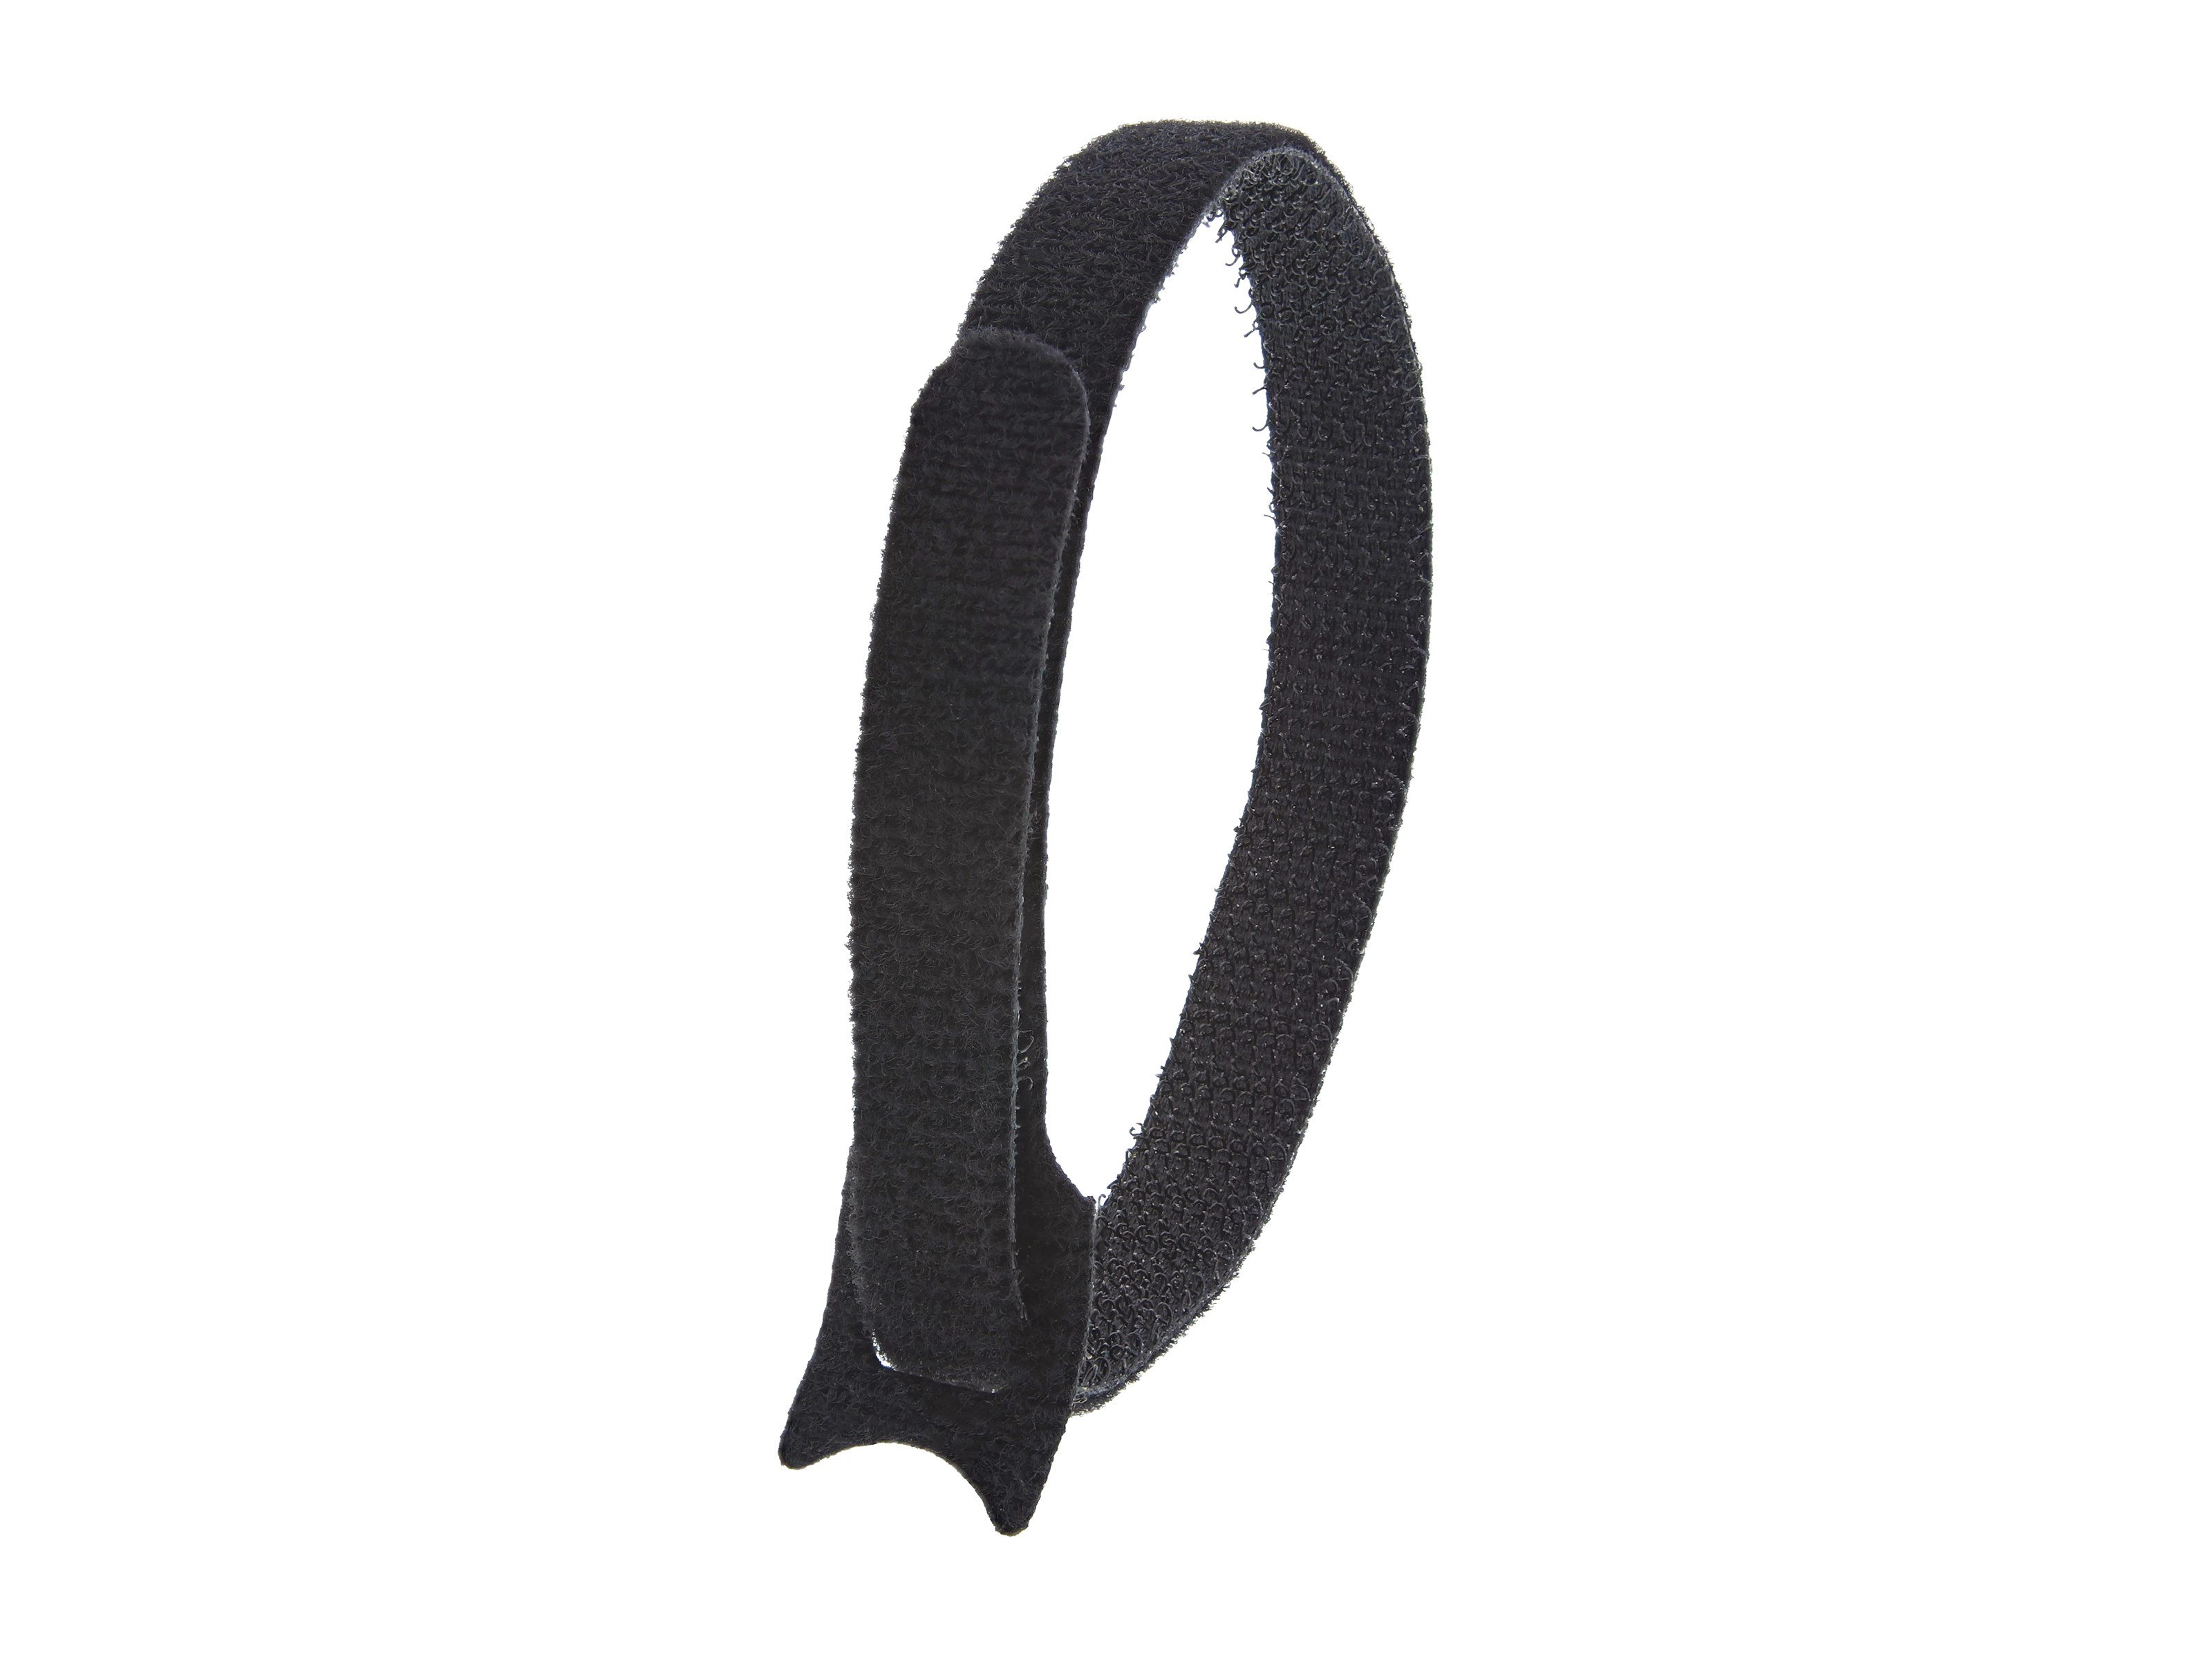 12 inch Black Hook and Loop Tie Wrap - 10 Pack